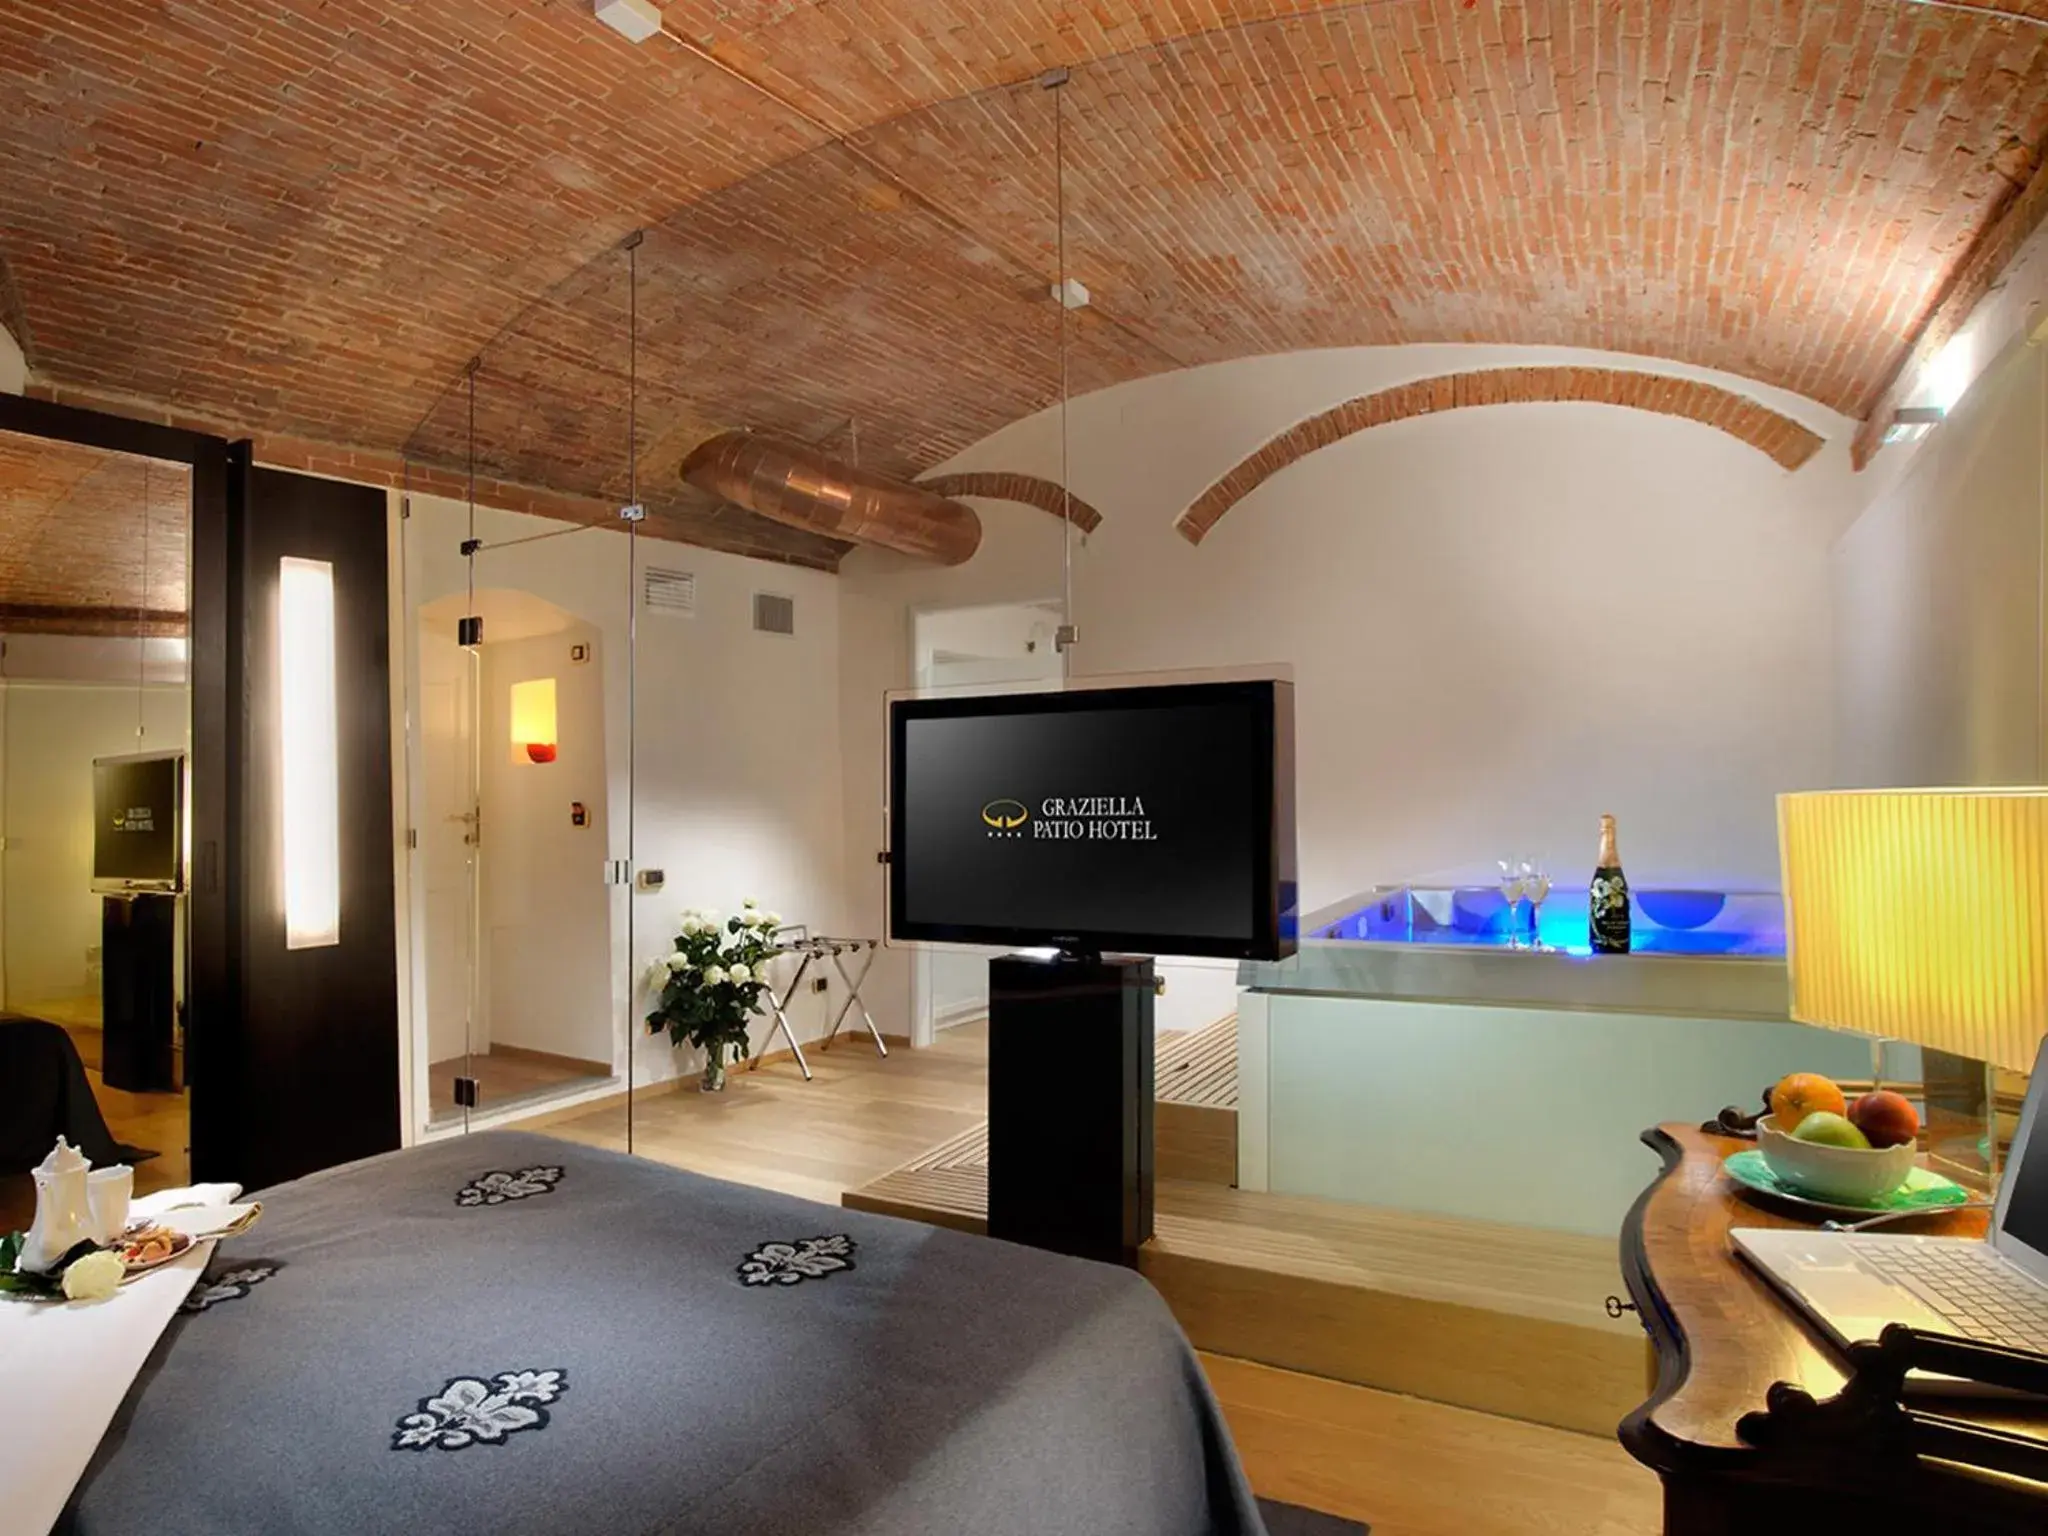 Photo of the whole room, TV/Entertainment Center in Graziella Patio Hotel